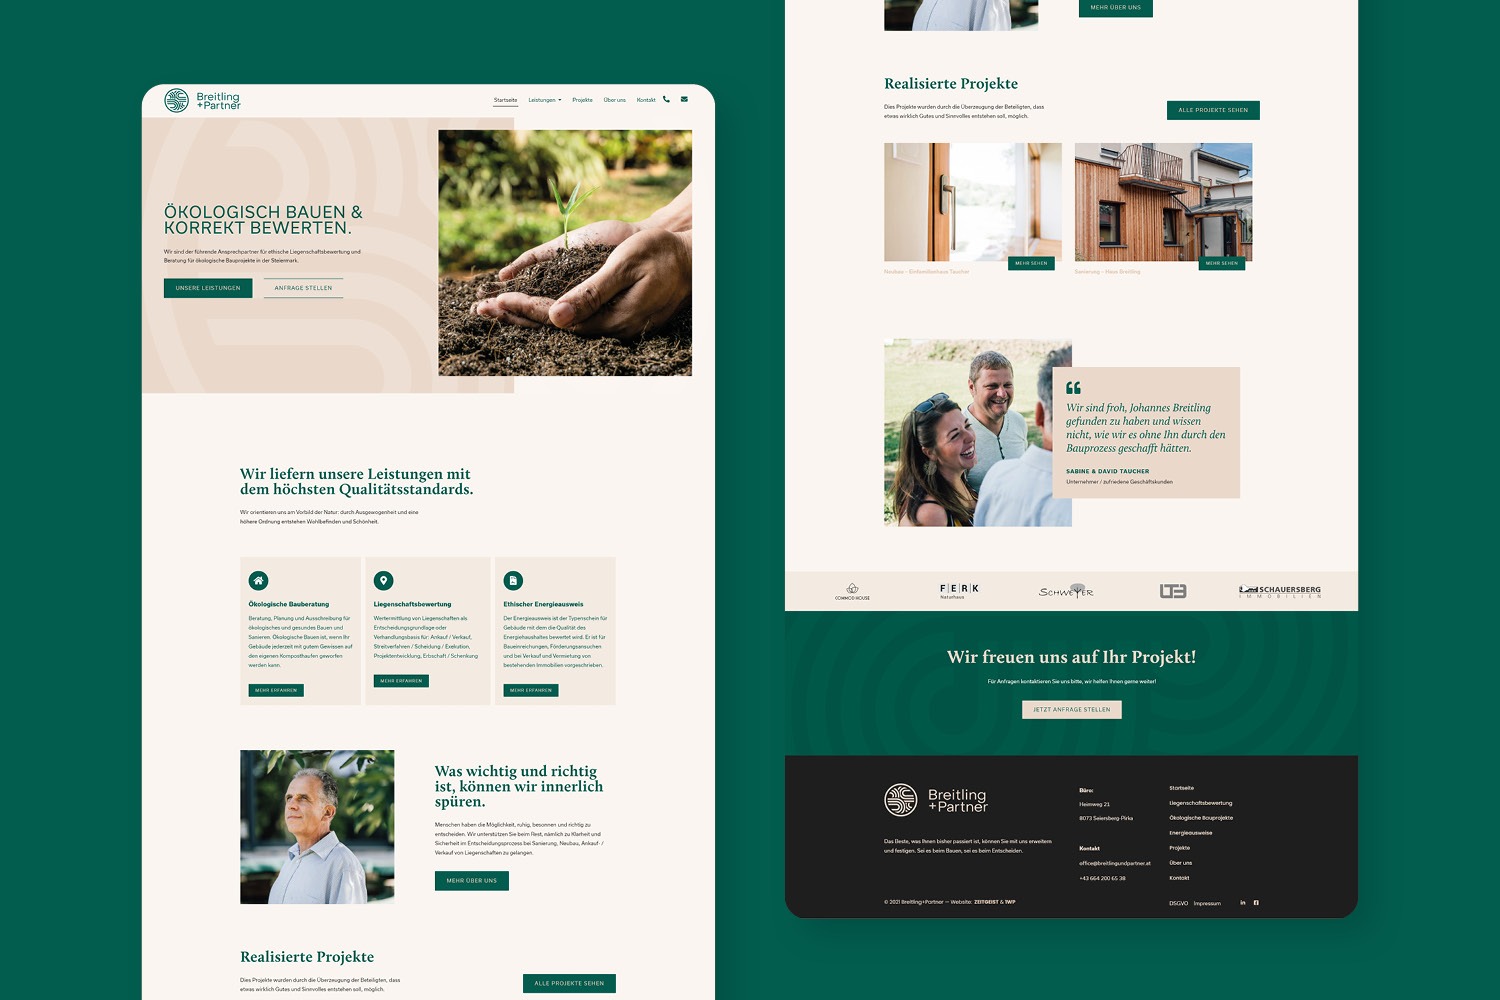 Ein Website-Design mit grünem Hintergrund und weißem Text für Breitling+Partner.